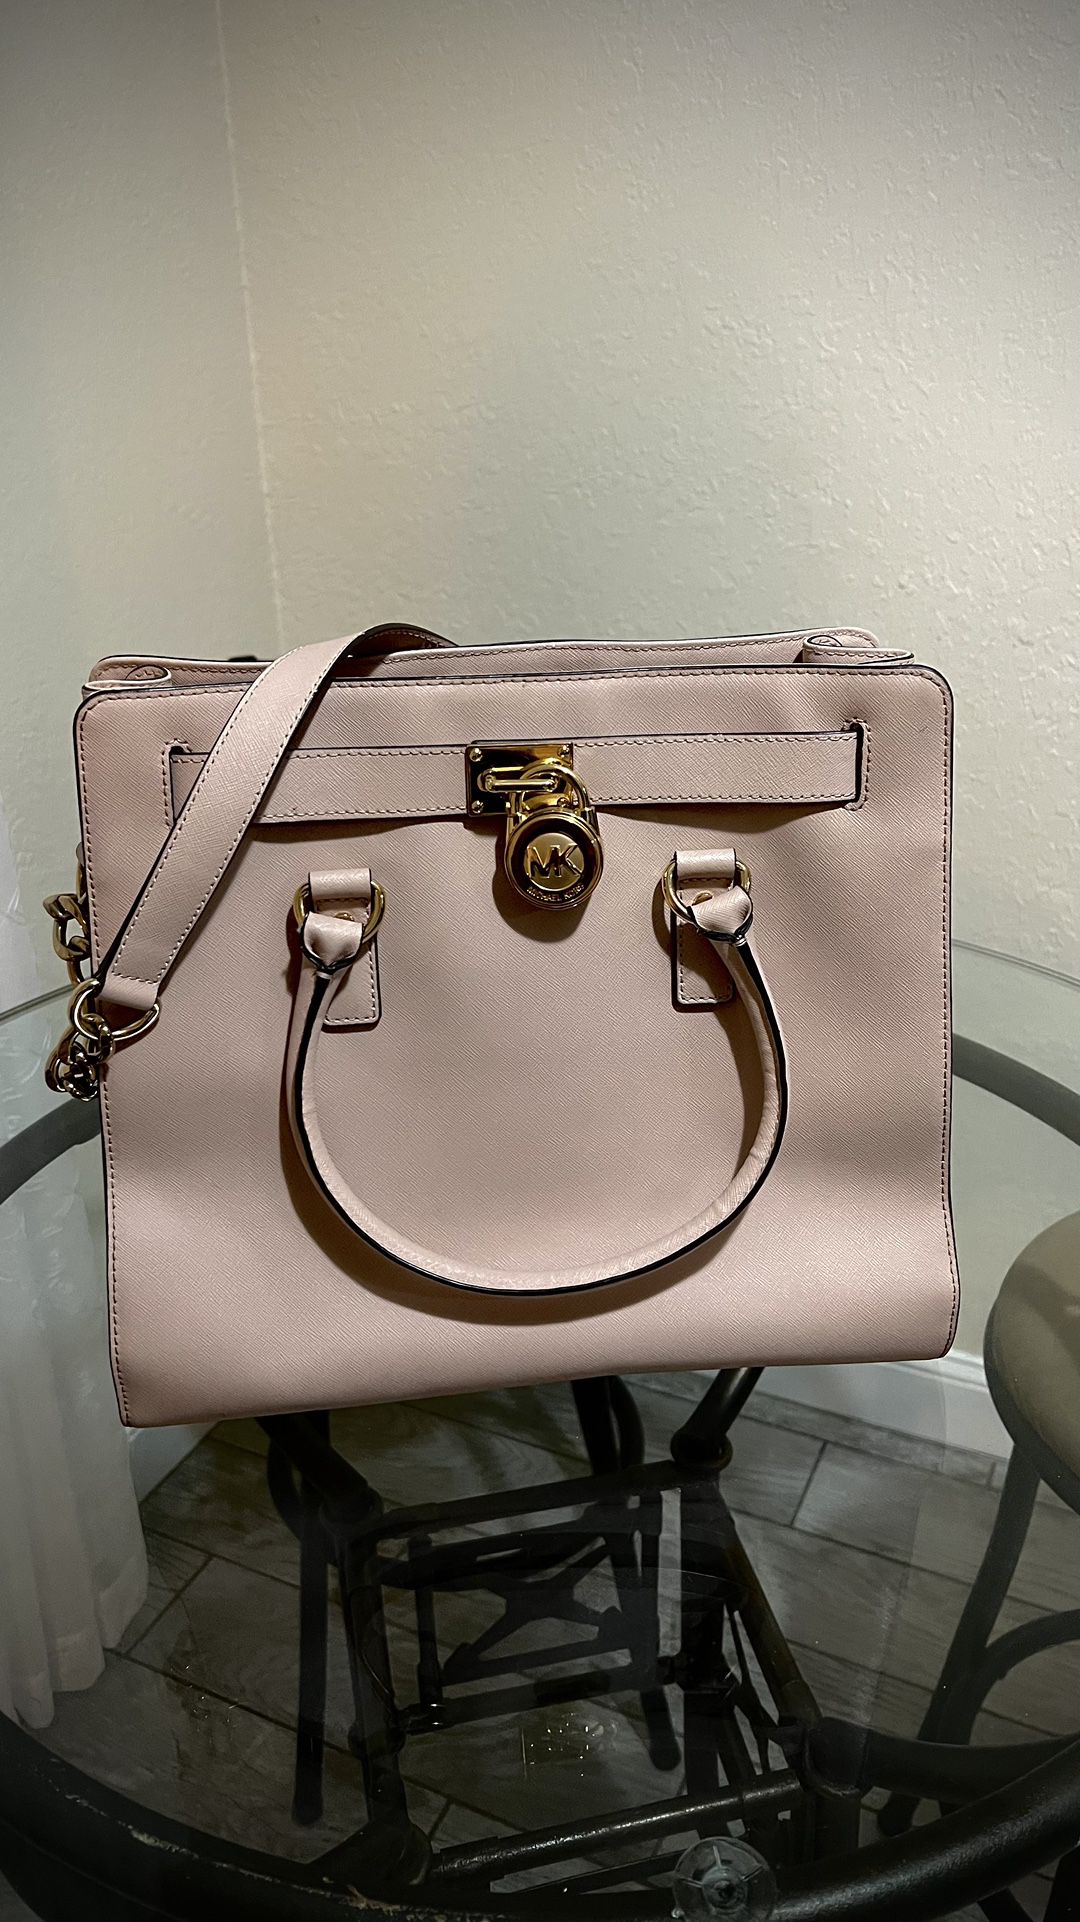 MKors handbag    for Sale in Fort Lauderdale, FL - OfferUp